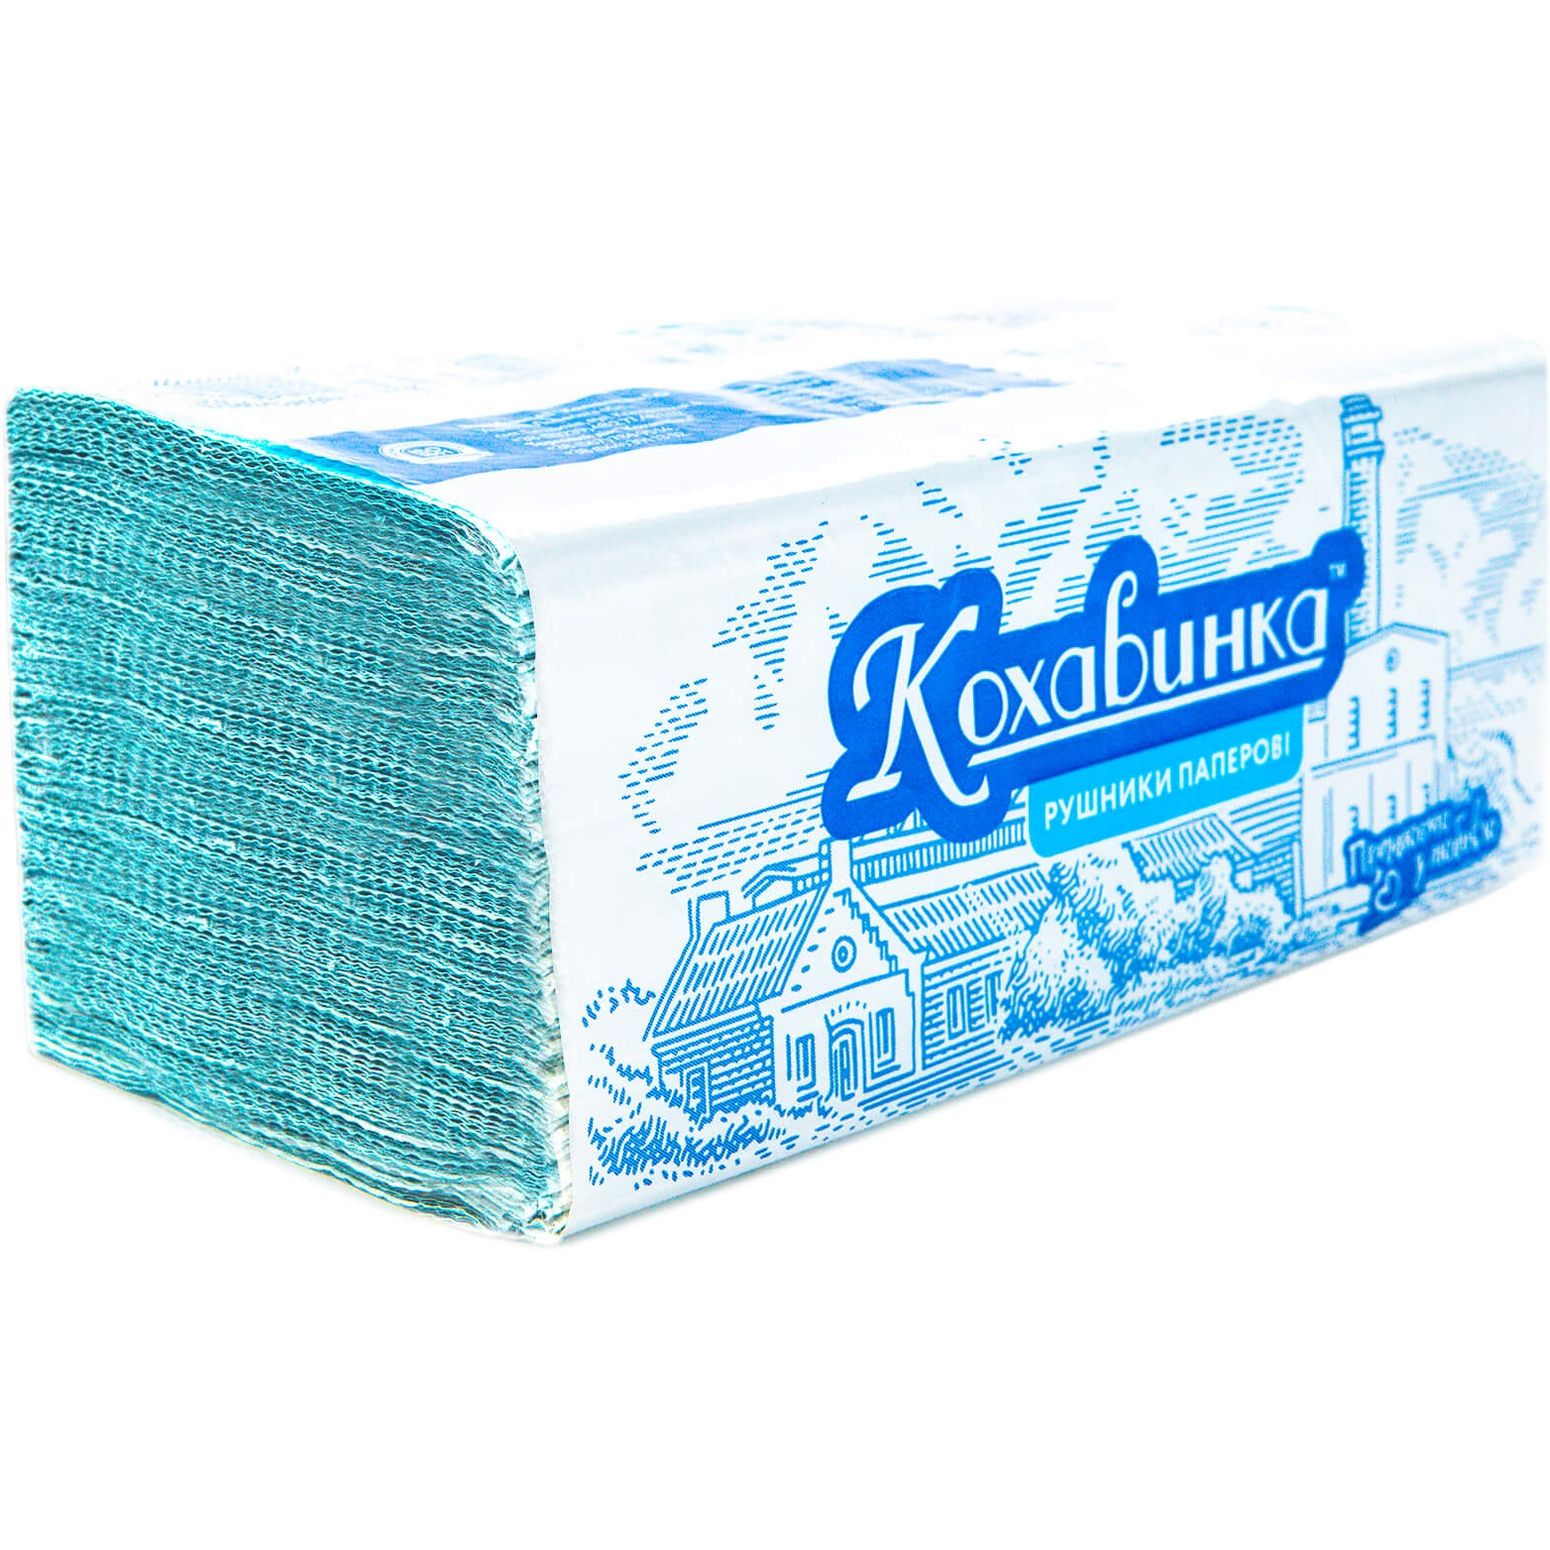 Бумажные полотенца Кохавинка однослойные 200 листов синие - фото 1